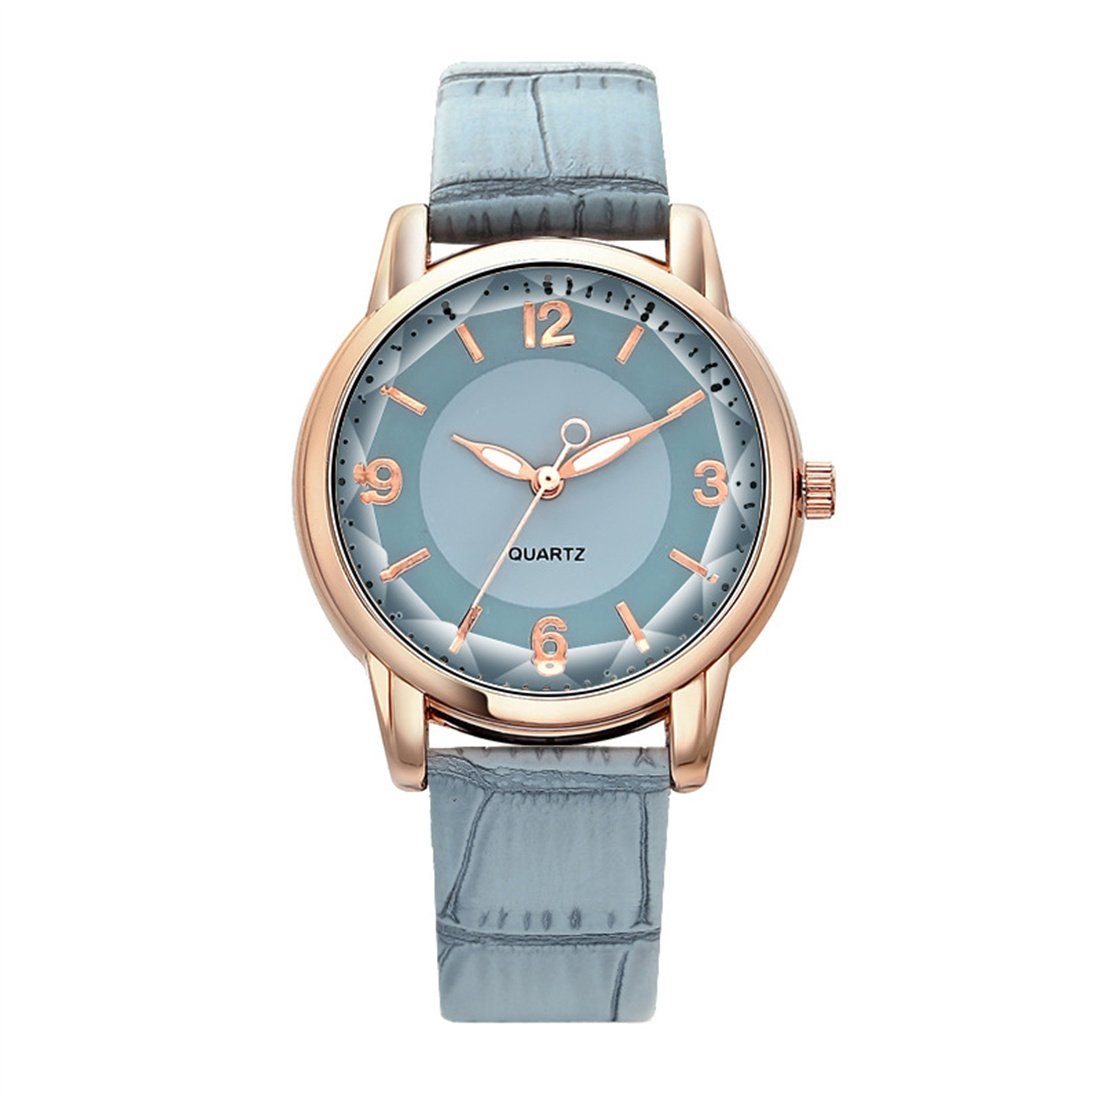 YSDYM Quarzuhr Uhr kreative Damenuhr, Quarzuhr mit Zifferblatt, zweifarbigem blau